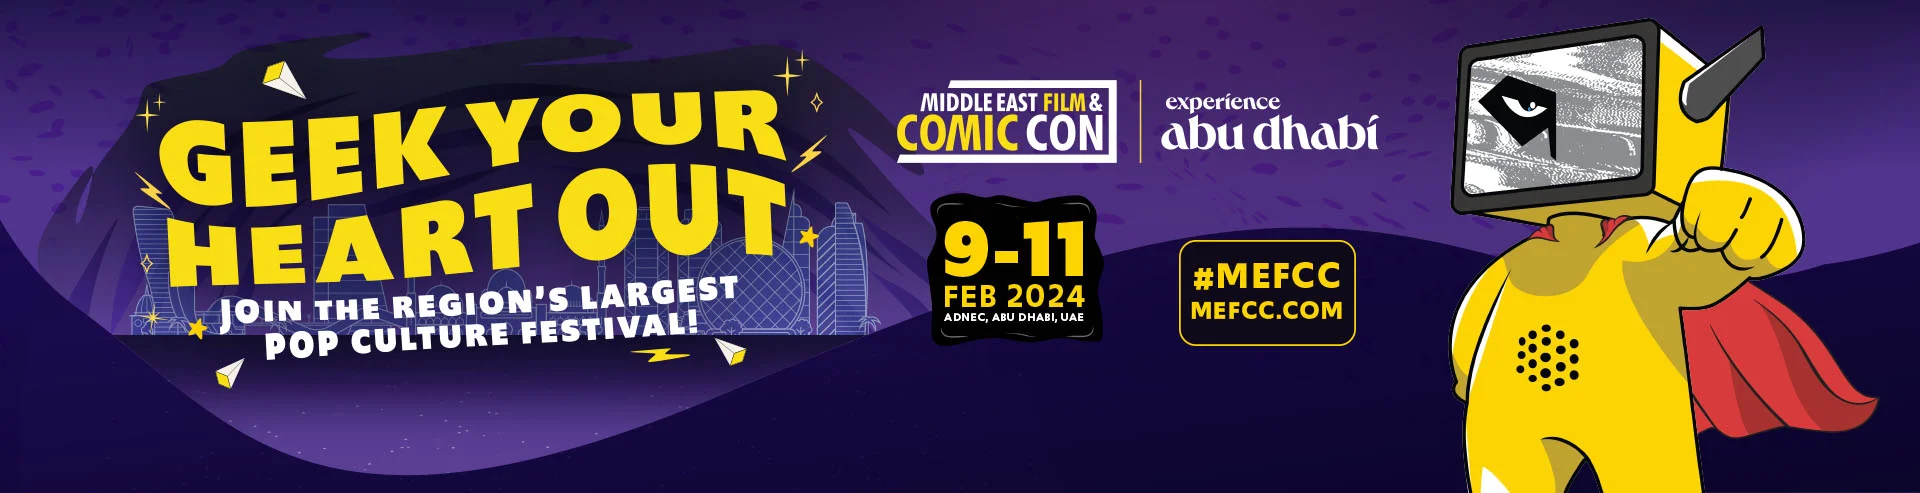 VM-Hero-Comic Con-MEFCC-2024-1920x493.webp